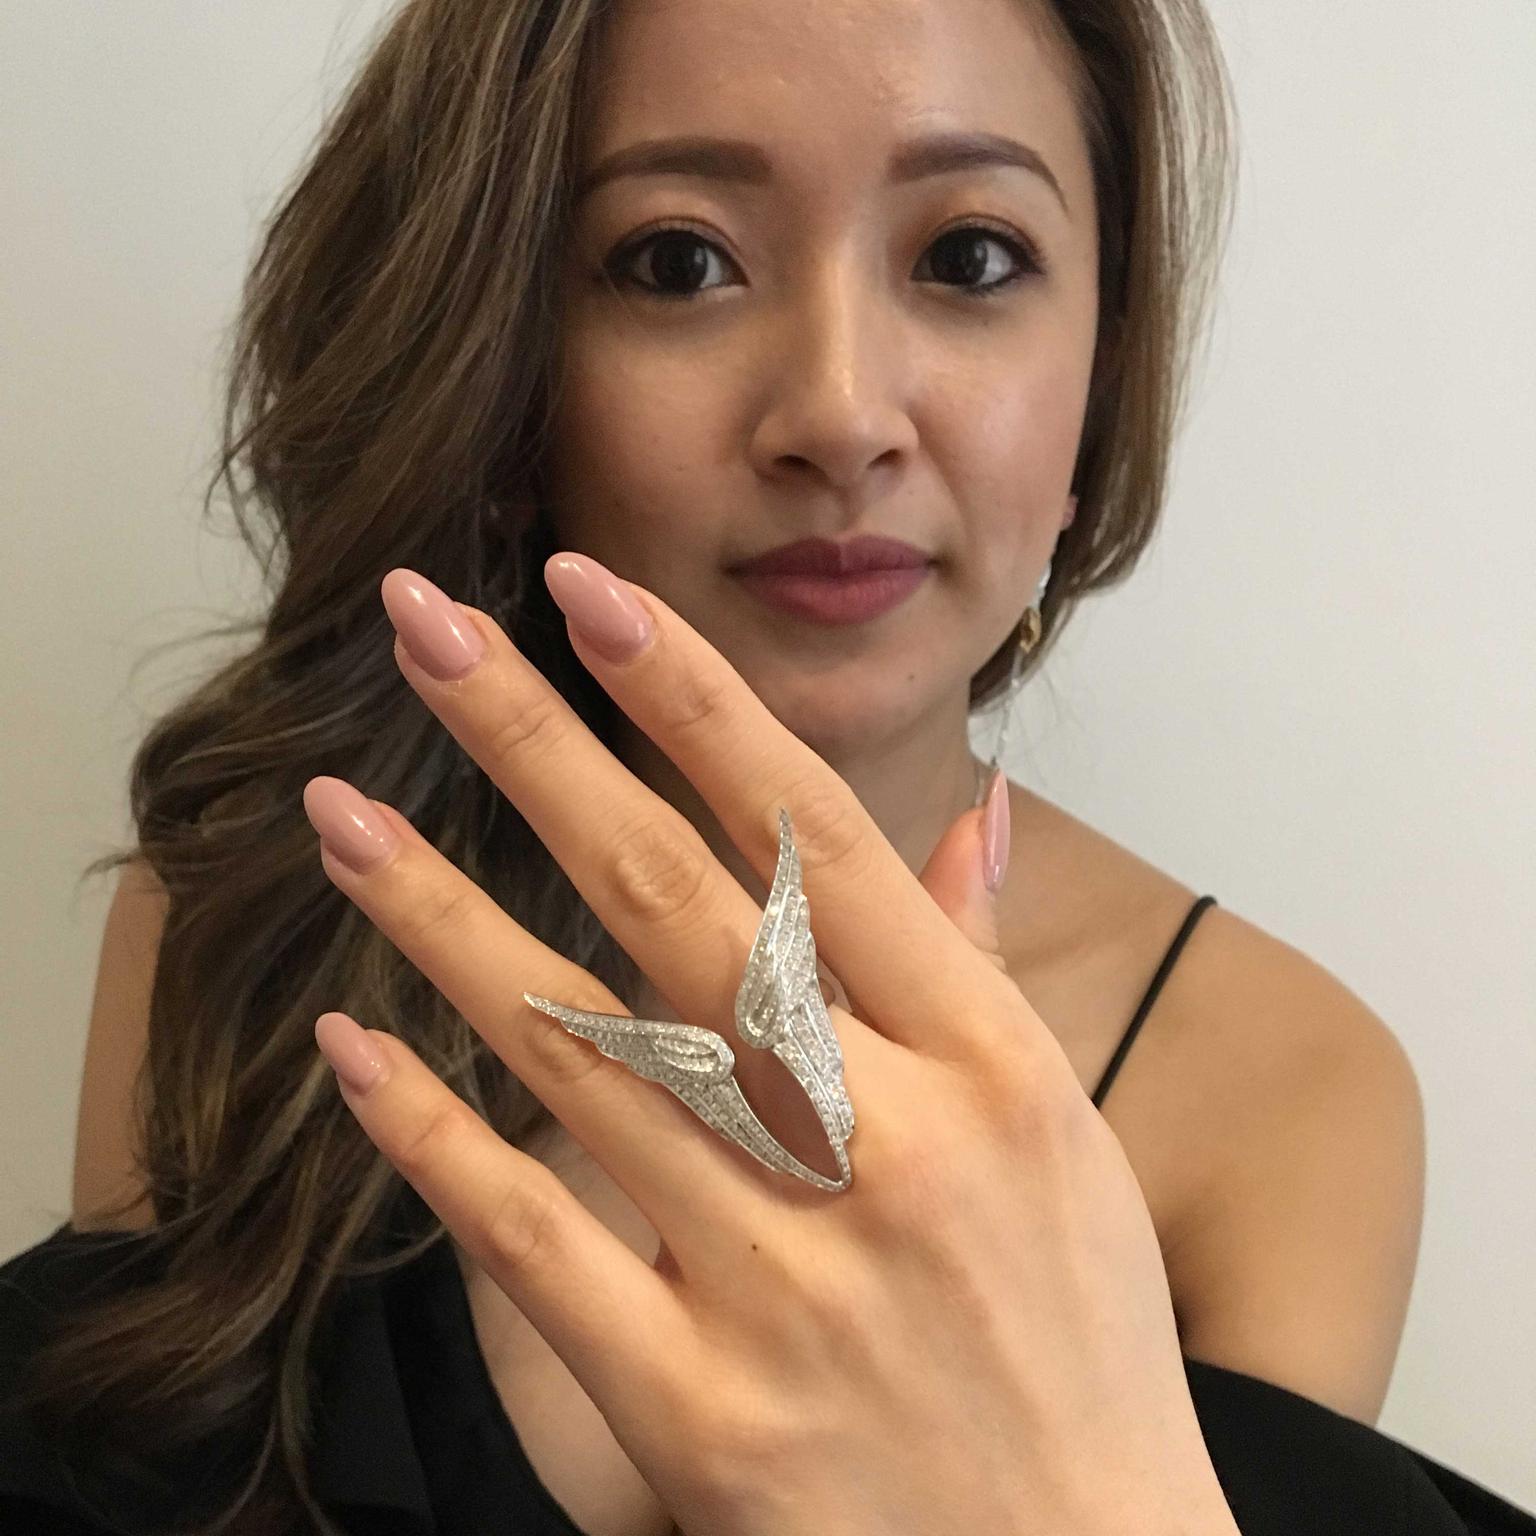 Sarah Zhuang wearing gold ring